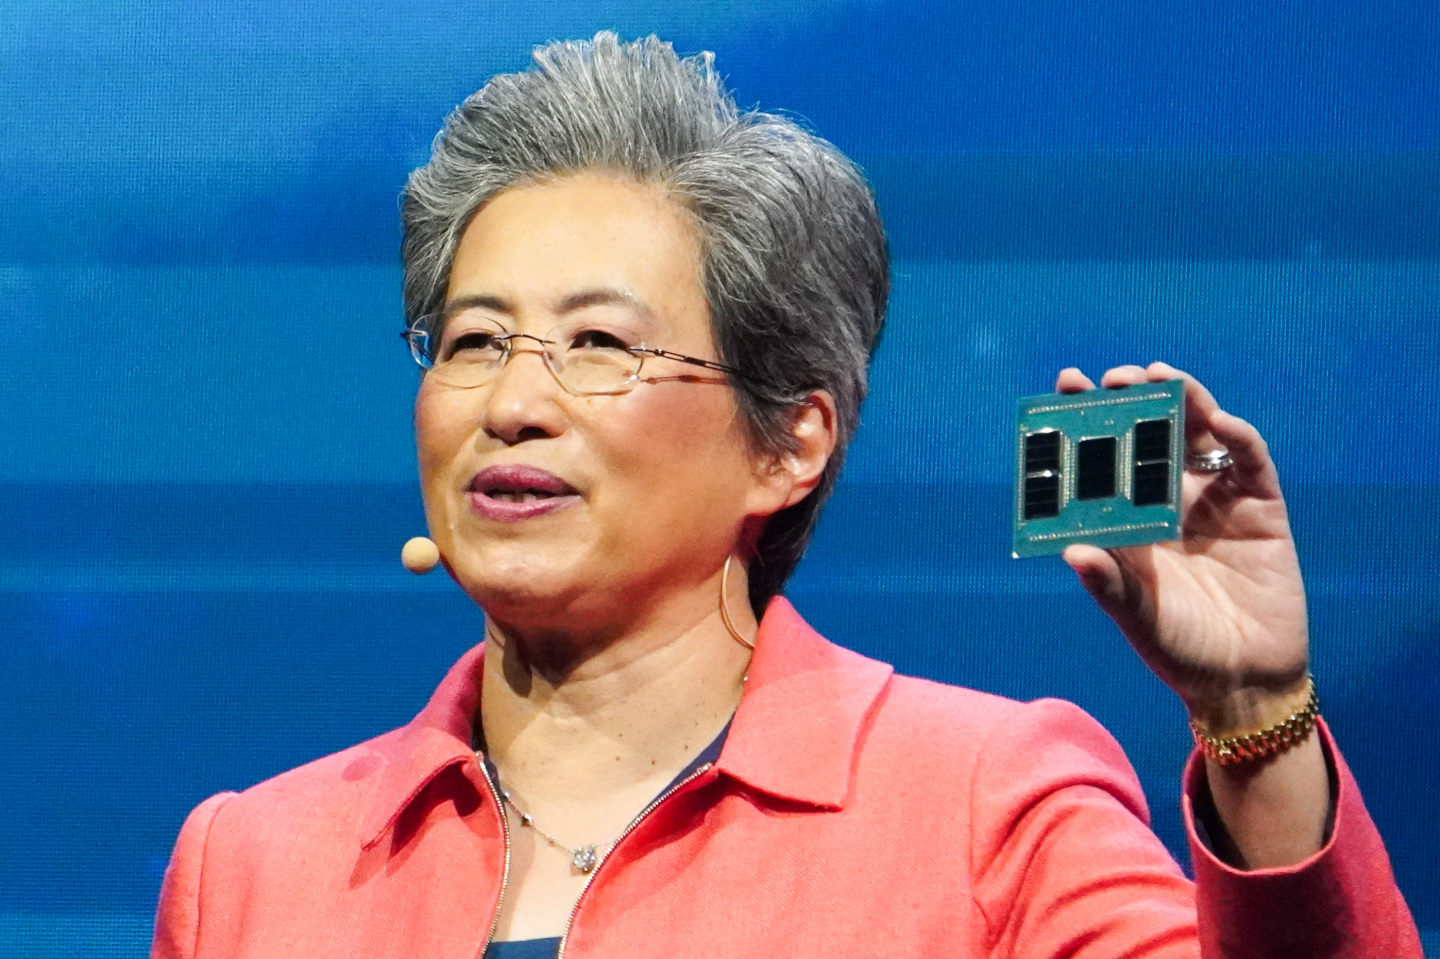 蘇姿丰在舞台上展示第5代Epyc處理器器實物。